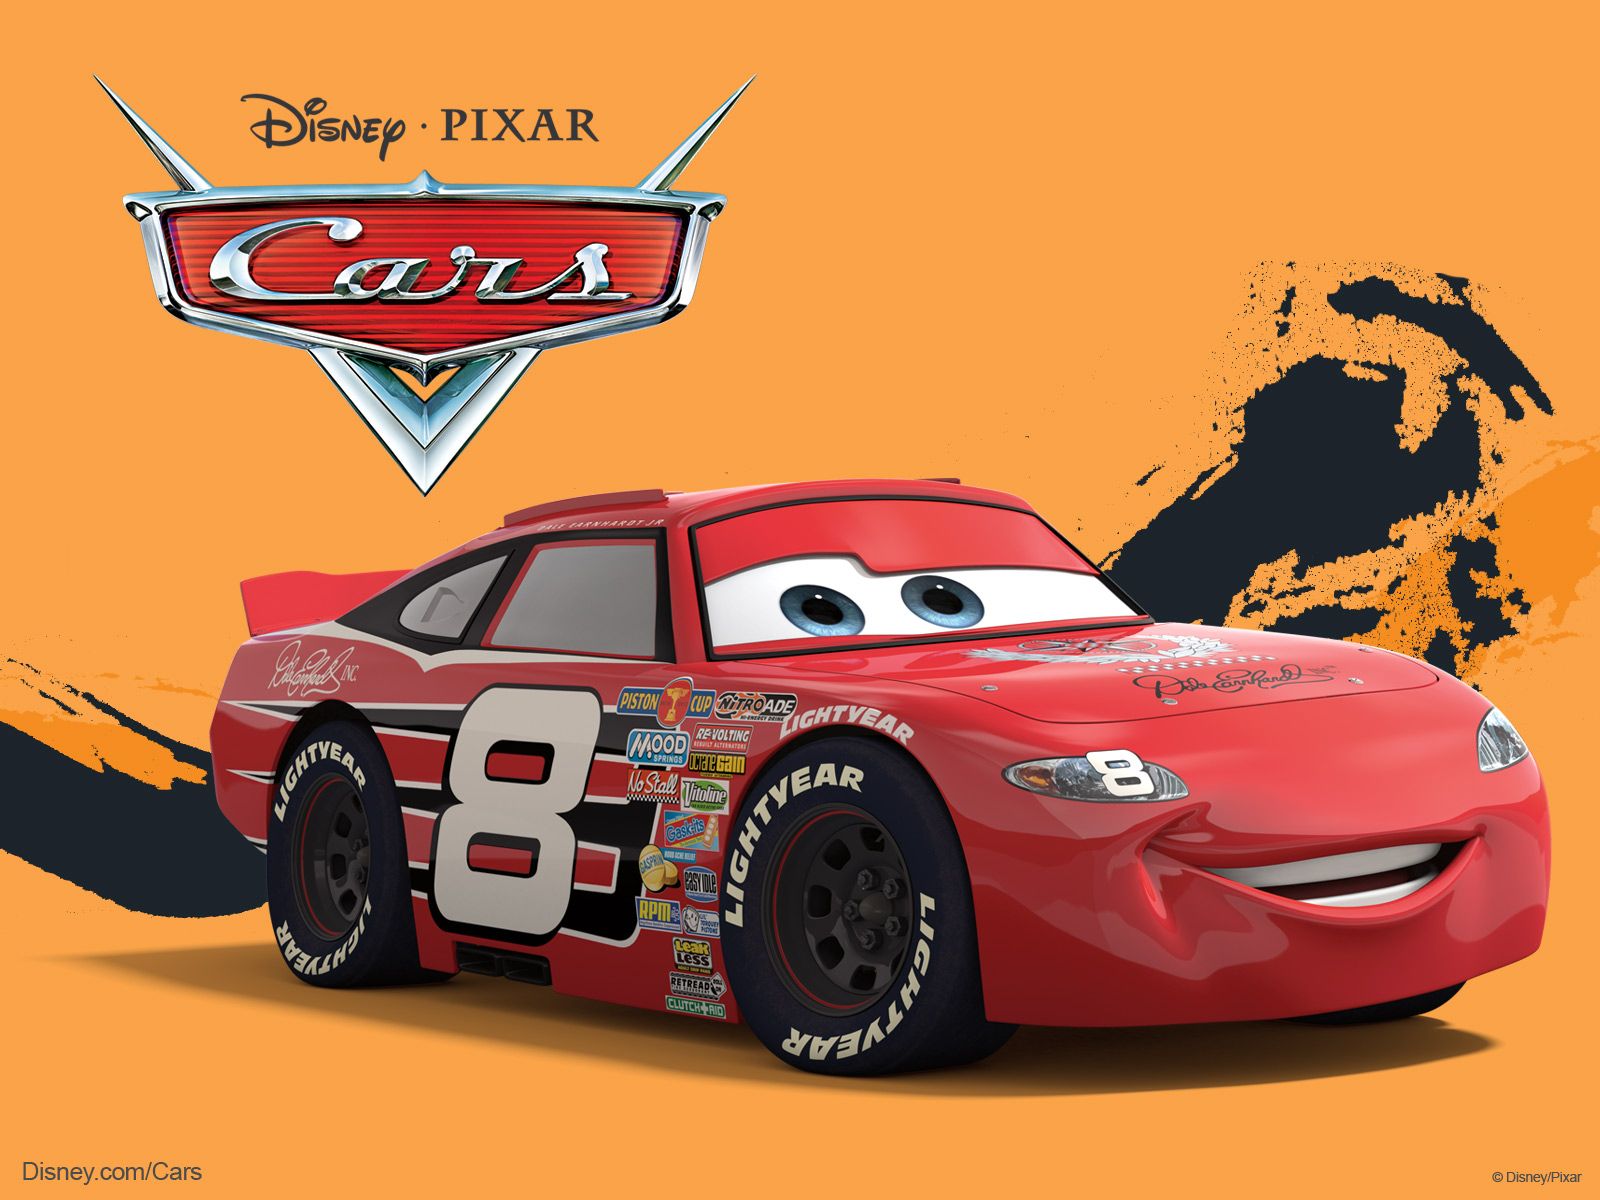 Pixar Cars Background for Desktop. Pixar Wallpaper, Disney Pixar Wallpaper and Pixar Christmas Background